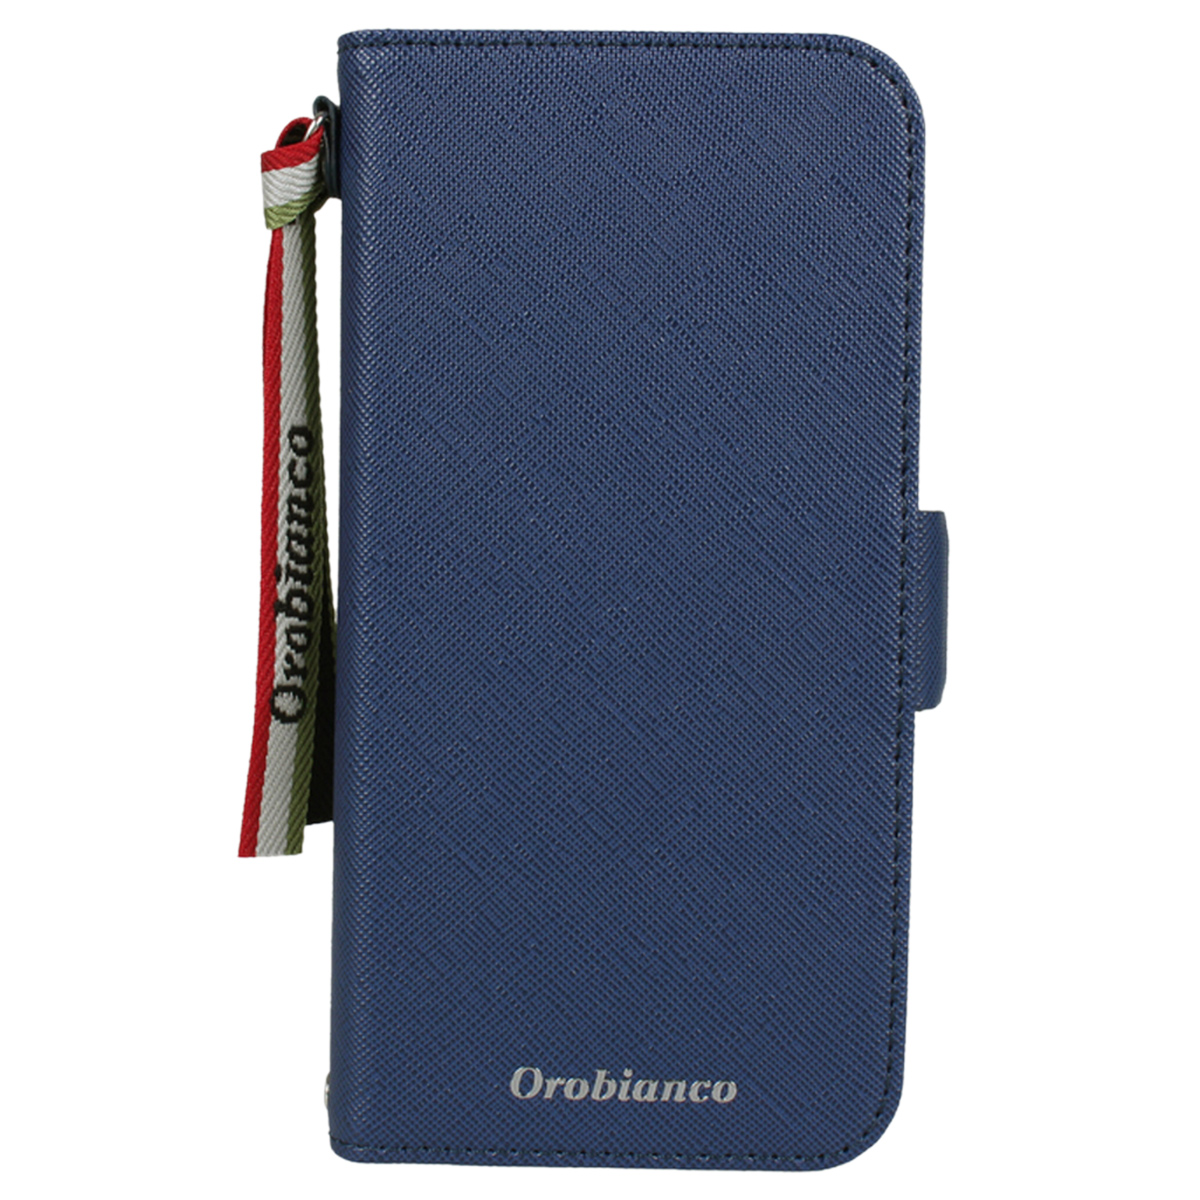 Orobianco オロビアンコ iPhone 12 mini 12 12 Pro ケース スマホ 携帯